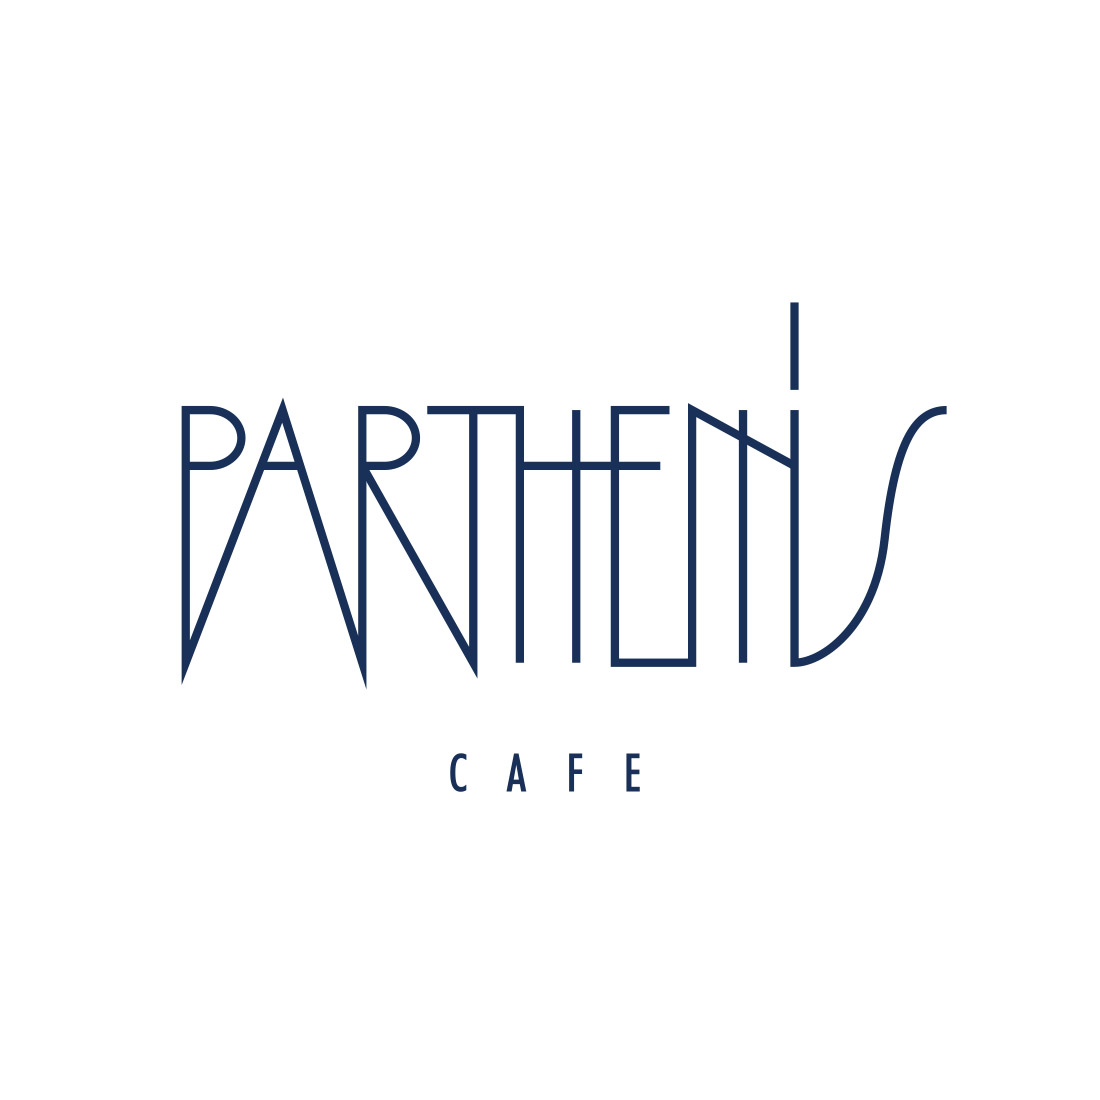 partheniscafe top4 - Home - Parthenis Cafe